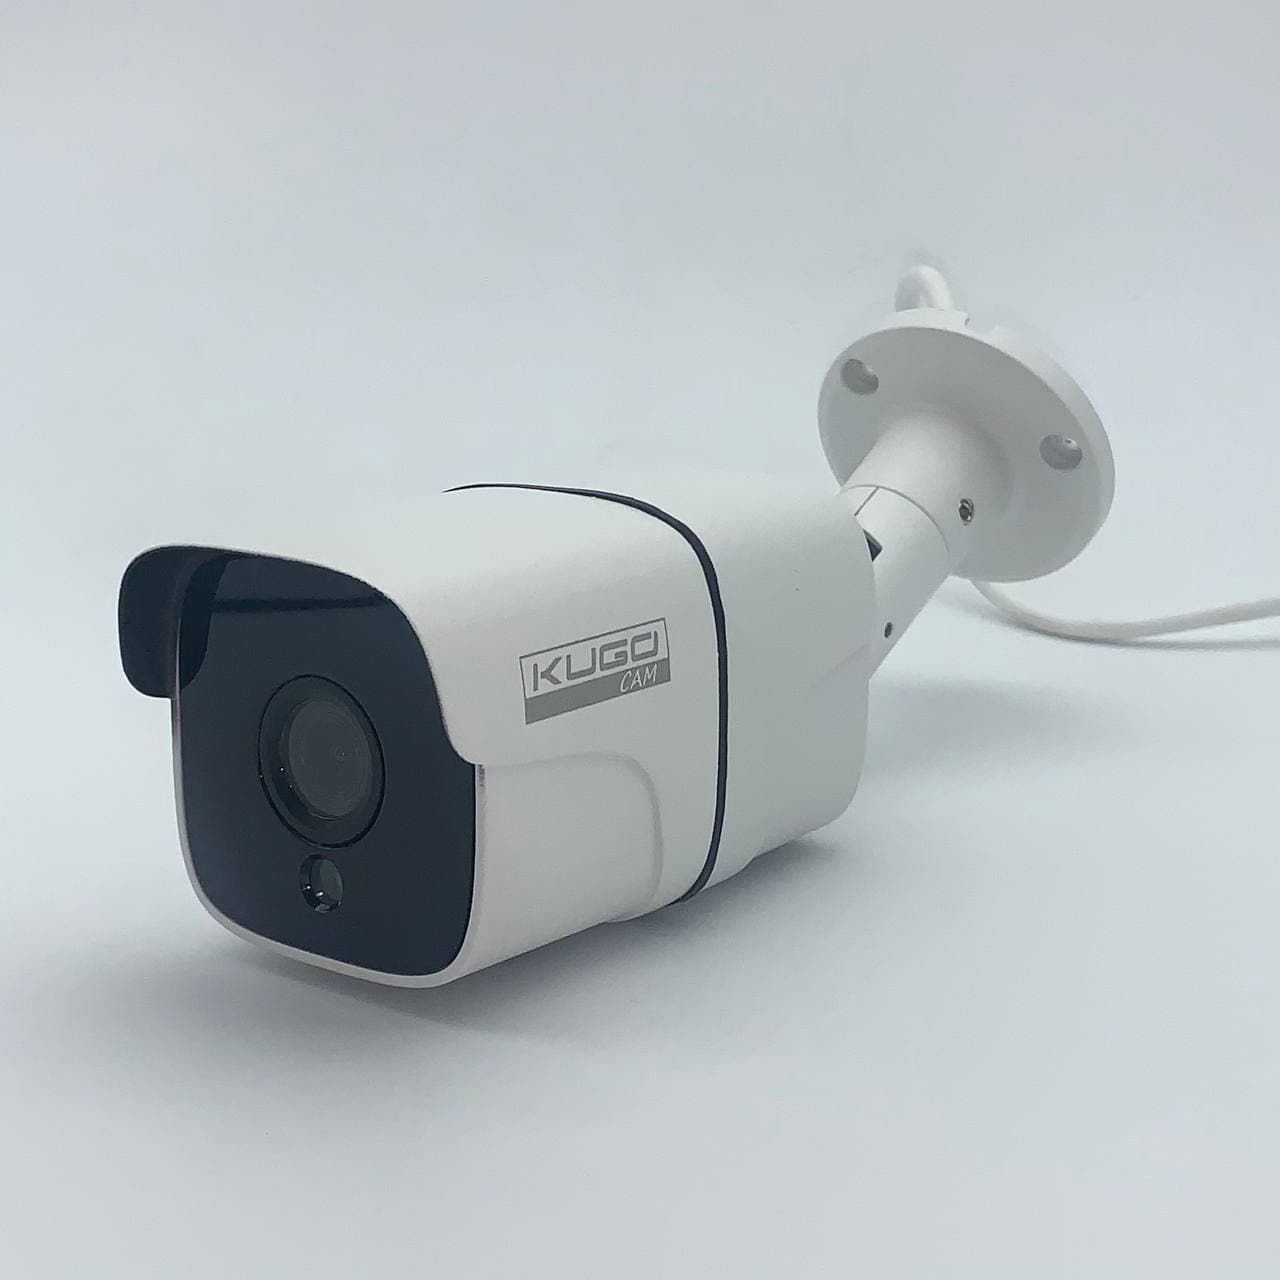  антивандальная IP-камера видеонаблюдения N636  со скидкой .